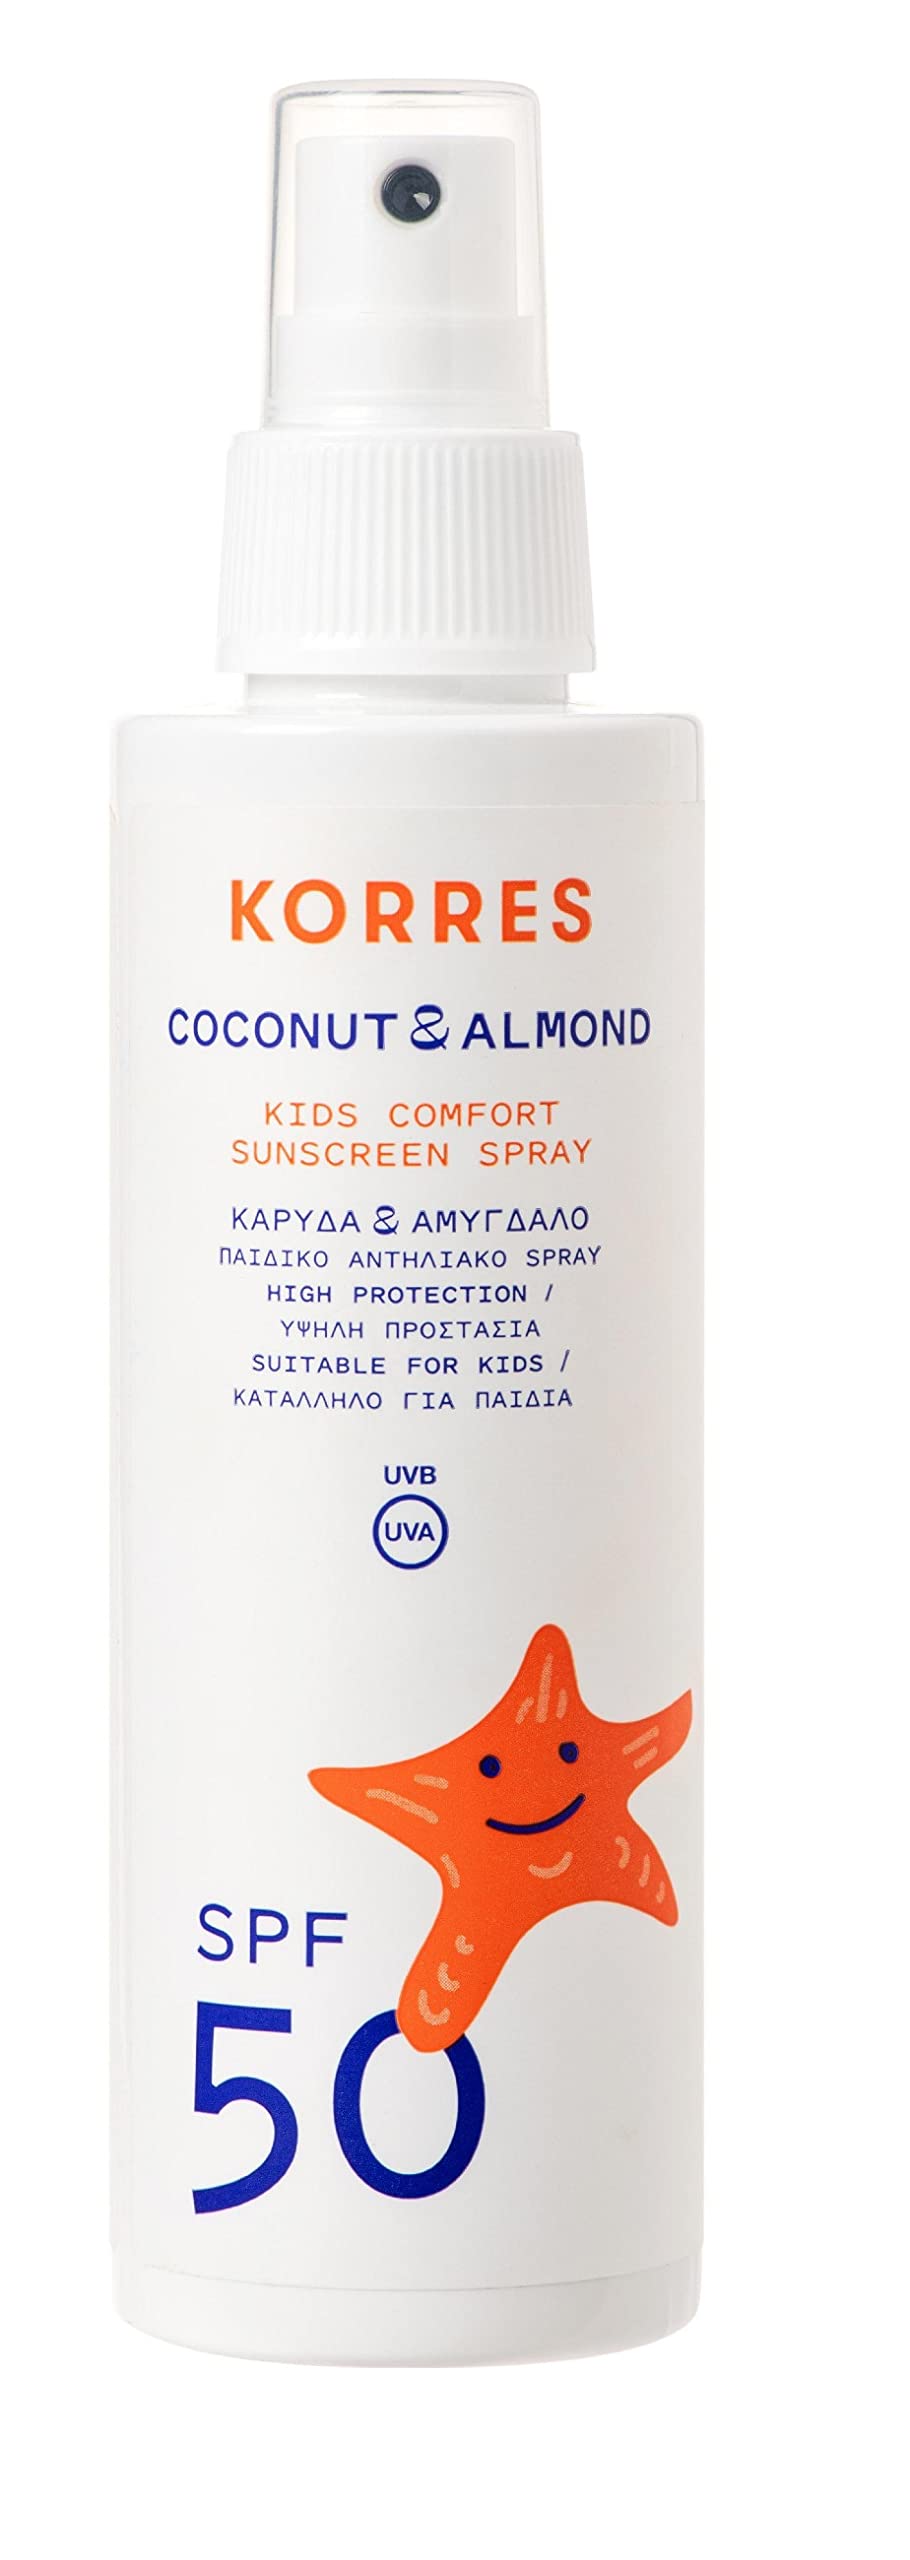 KORRES Sonnenspray Coconut & Almond LSF 50, Sonnenschutz für Kinder, mit Sheabutter & Süßmandelöl, frei von OMC & Octocrylen, für sensible Haut geeignet, 150 ml